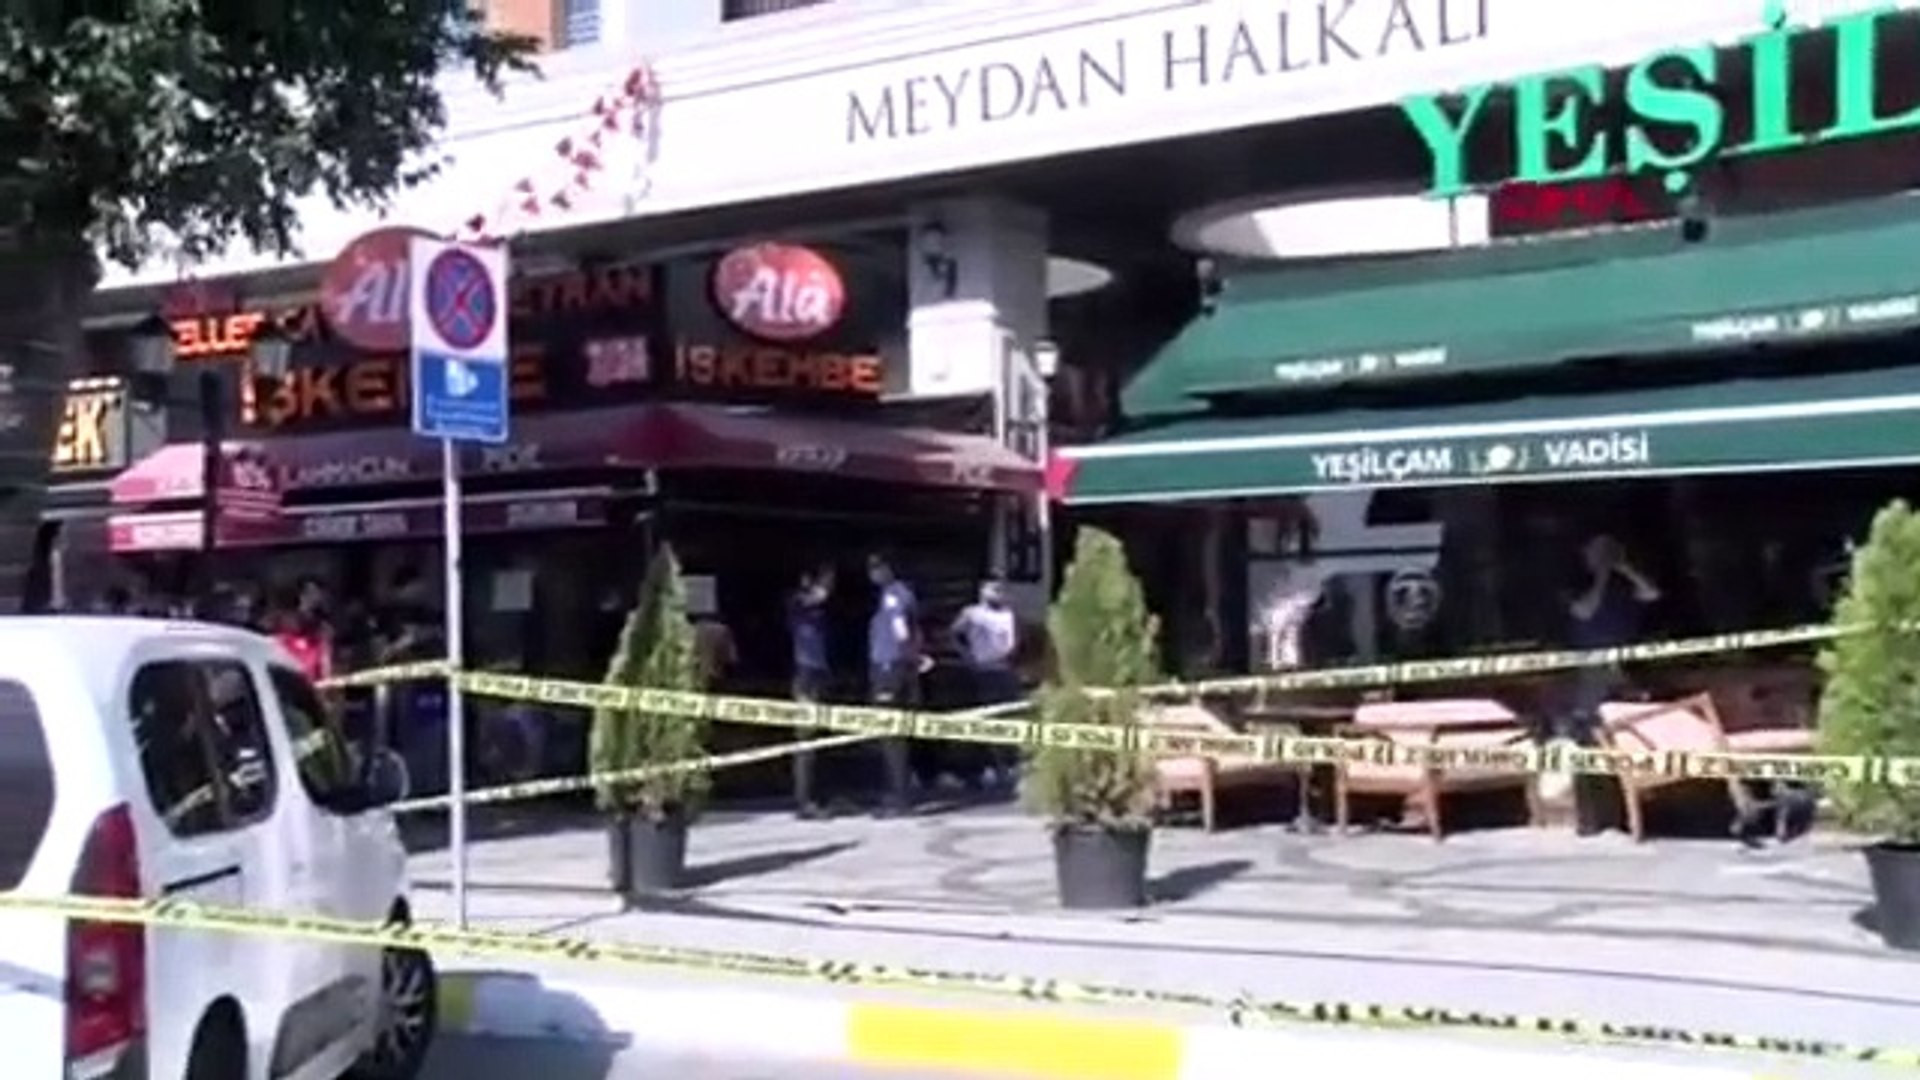 İstanbul'dalüks sitede kira zammı savaşı: 13 yaralı, 8 gözaltı var